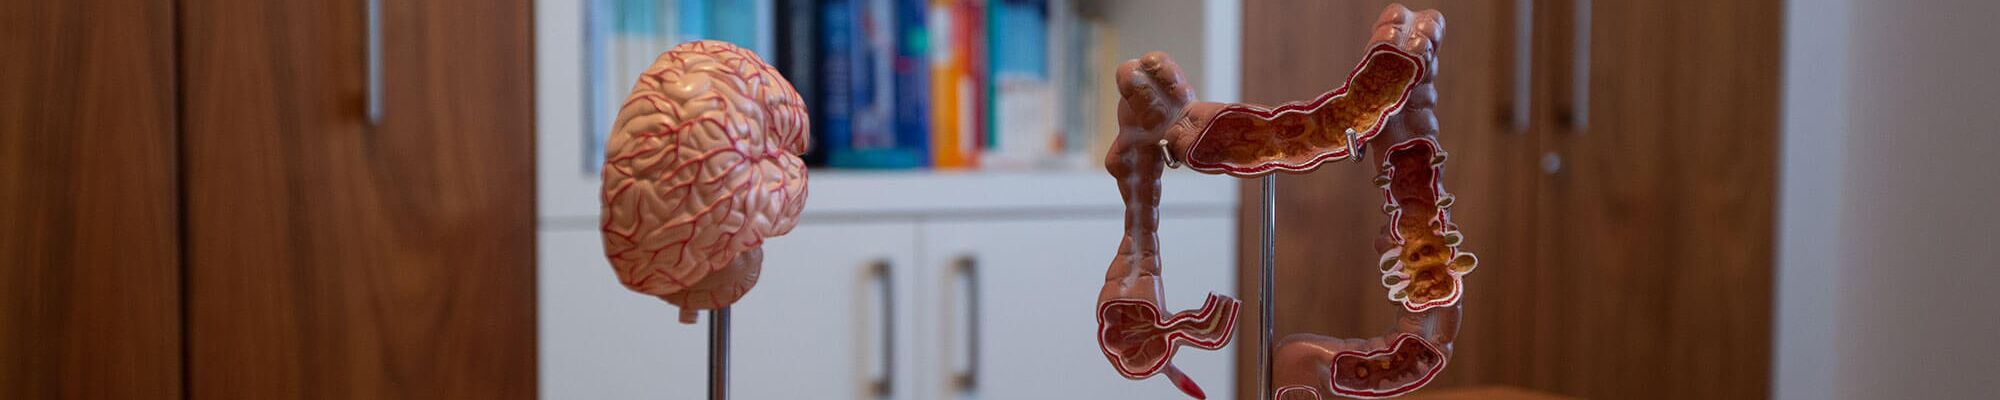 2 medizinische Modelle von inneren Organen